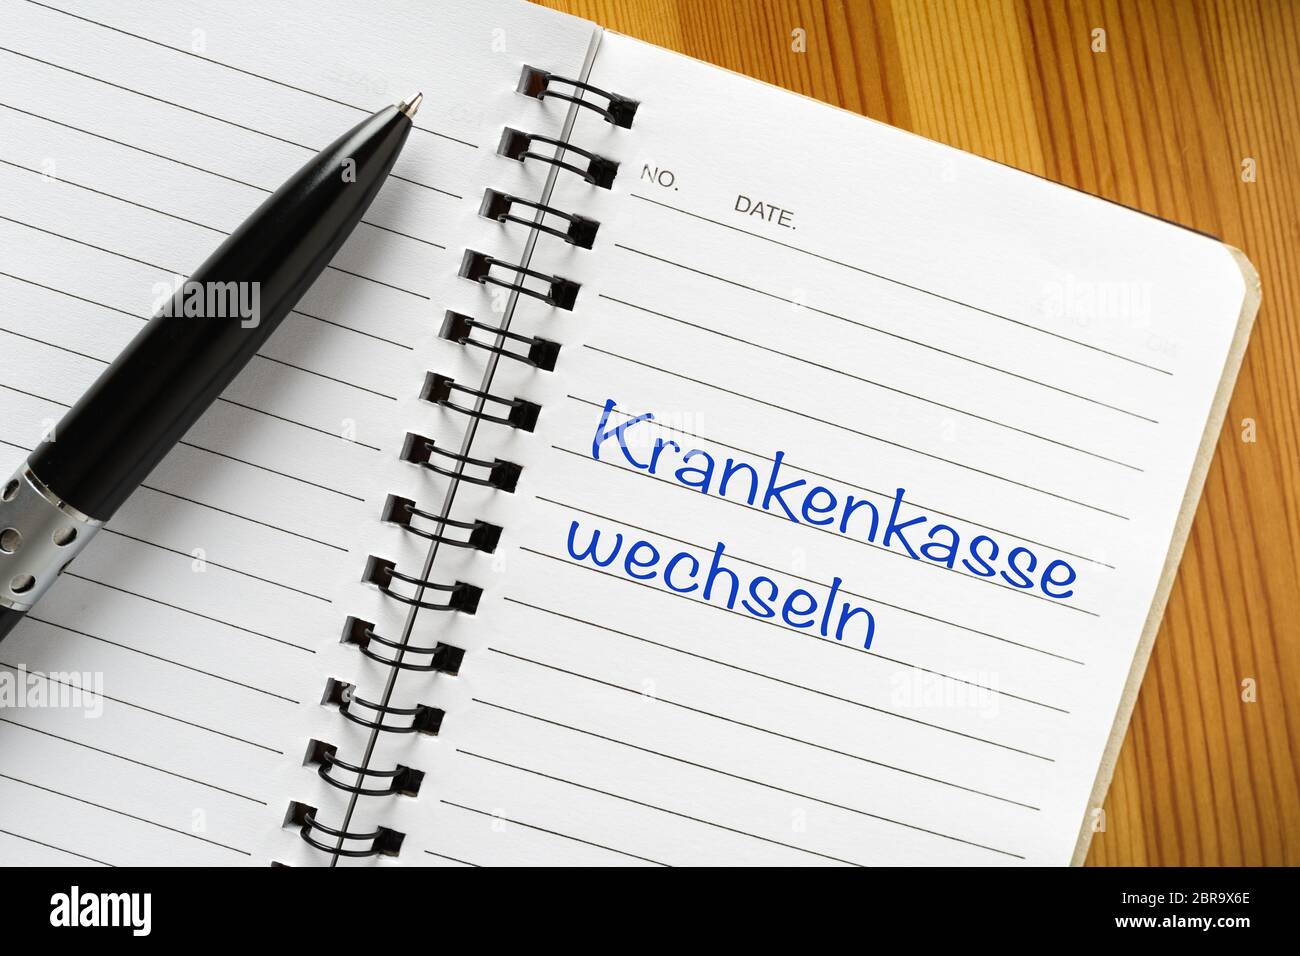 Bloc-notes avec expression allemande "Krankenkasse wechseln". Traduction : Santé de l'interrupteur Banque D'Images